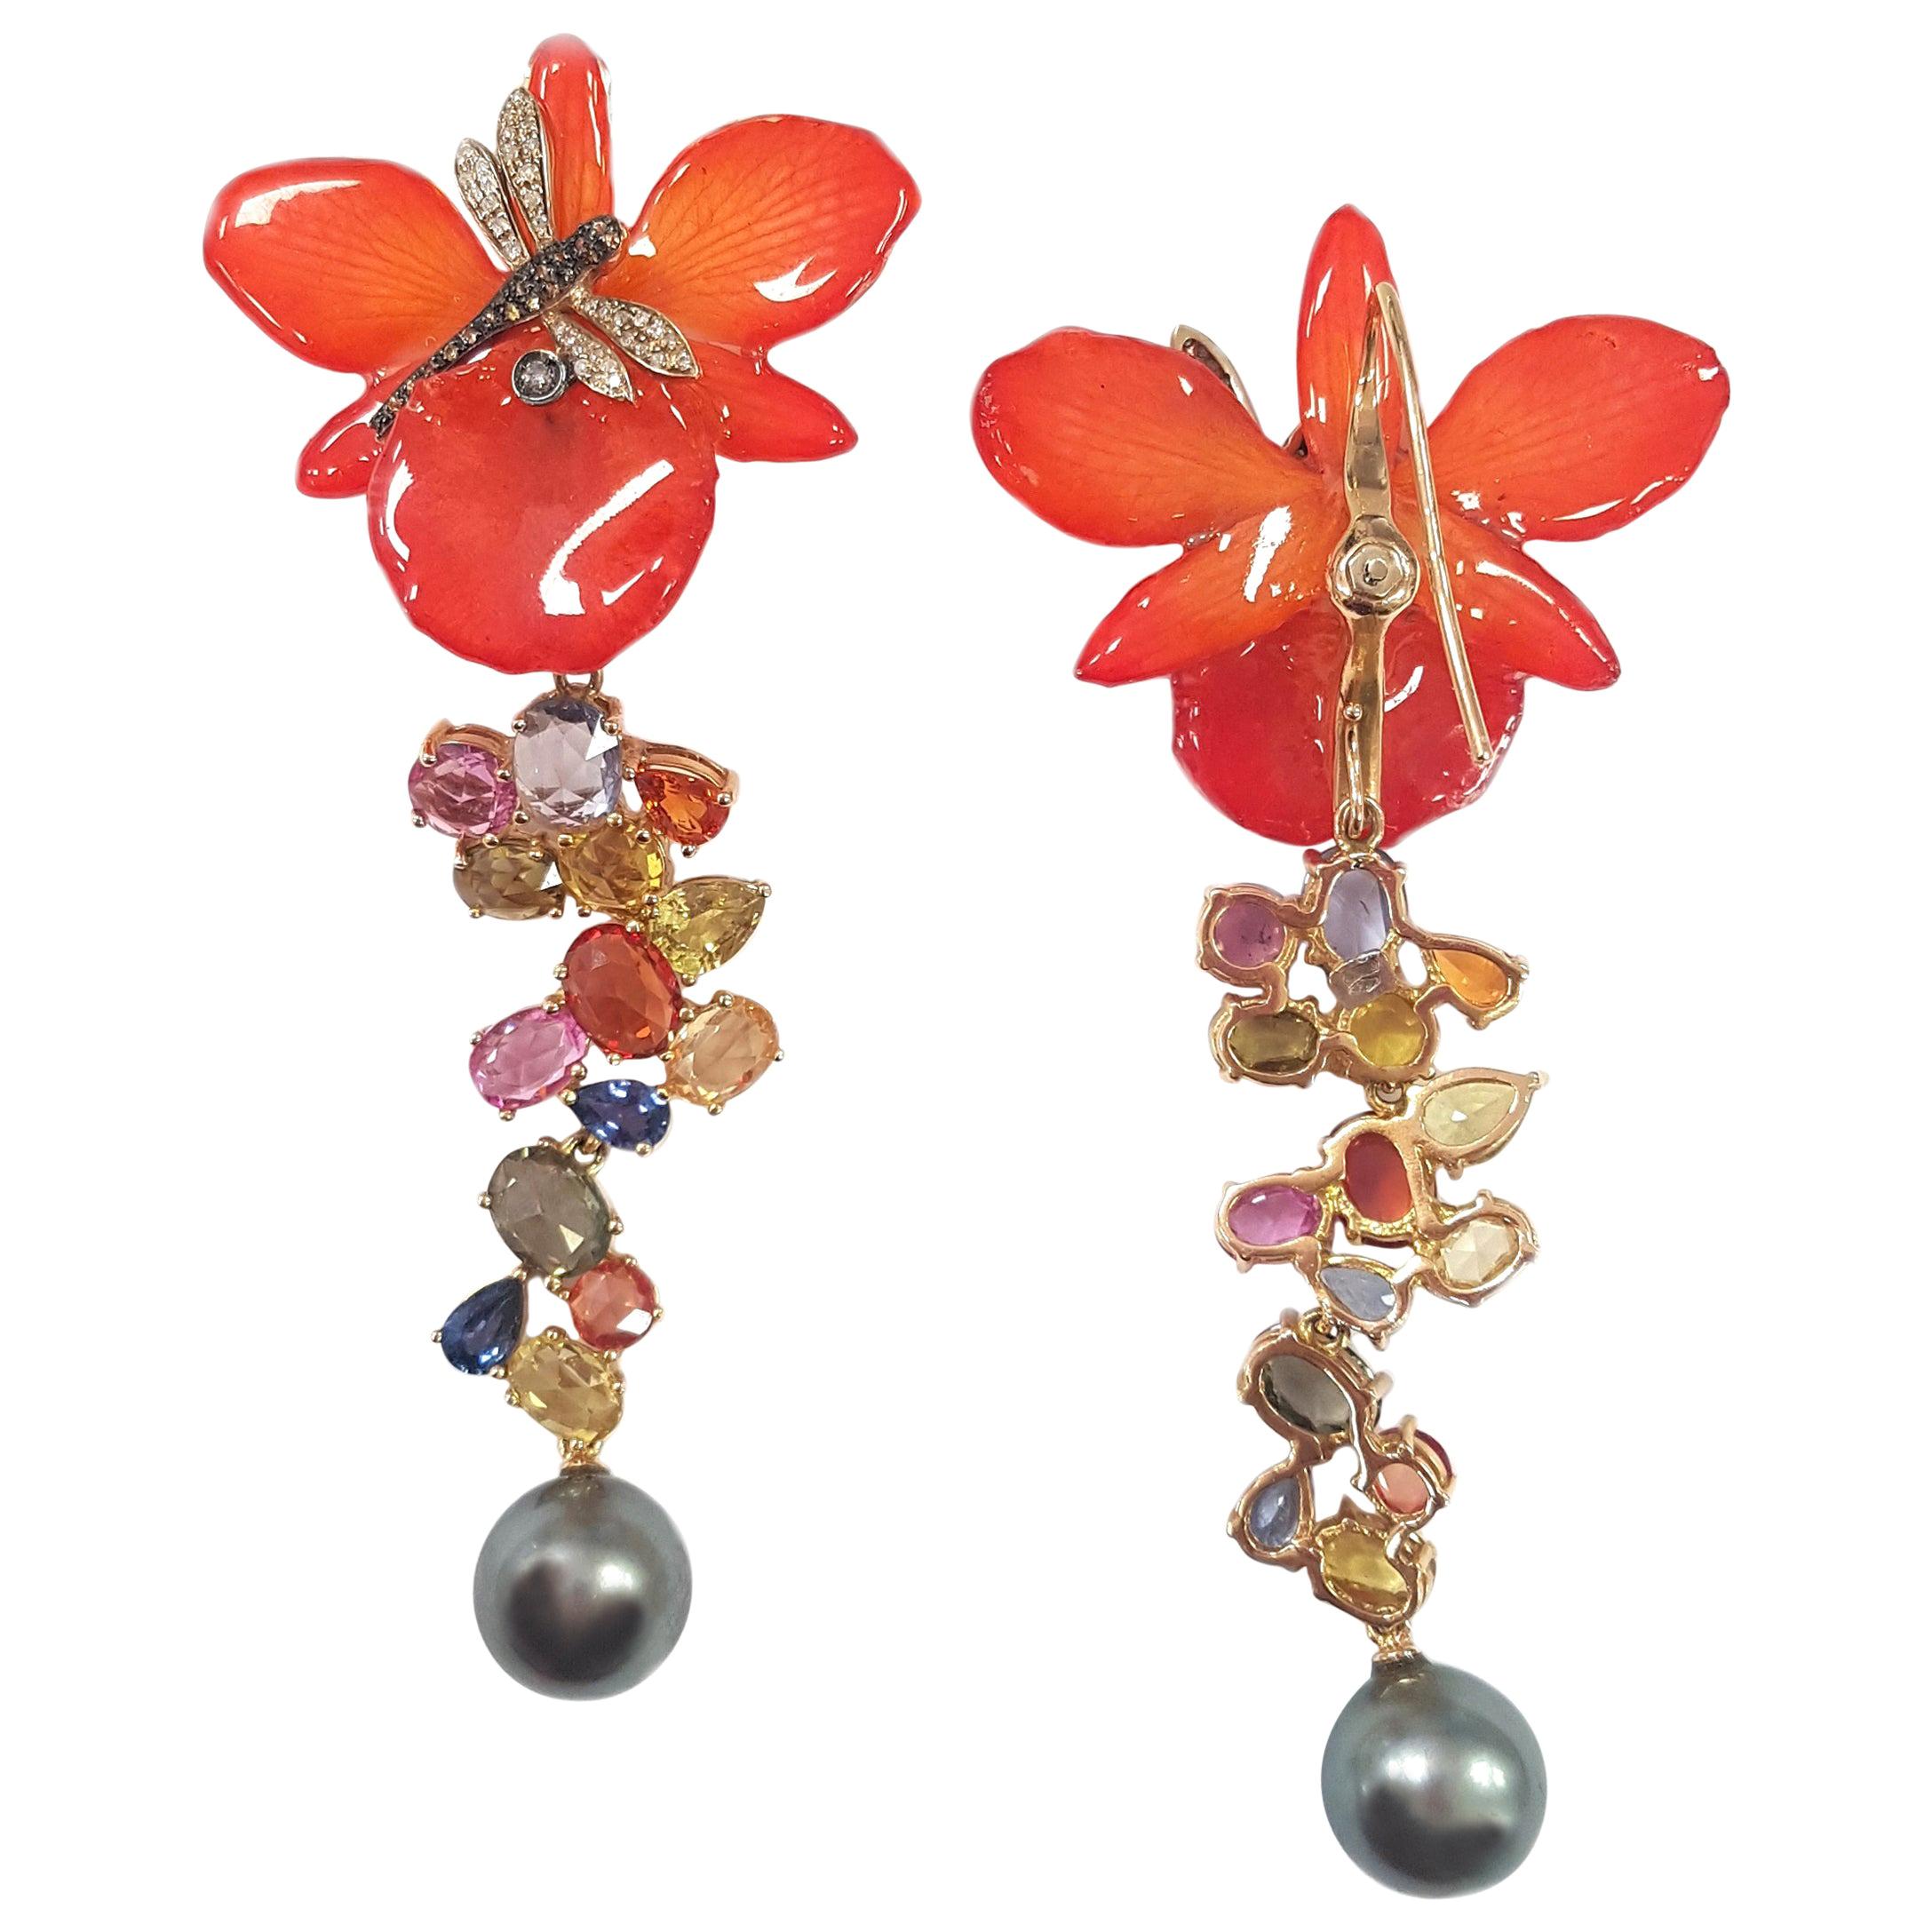 Mehrere Paar Ohrringe in einem! Diese wandelbaren Ohrringe mit Libelle und echter Orchidee aus Perlen, Saphiren, Diamanten und 18-karätigem Gelbgold wurden meisterhaft von Hand gefertigt. Sie lassen sich auch leicht in ein zweites Paar verwandeln,